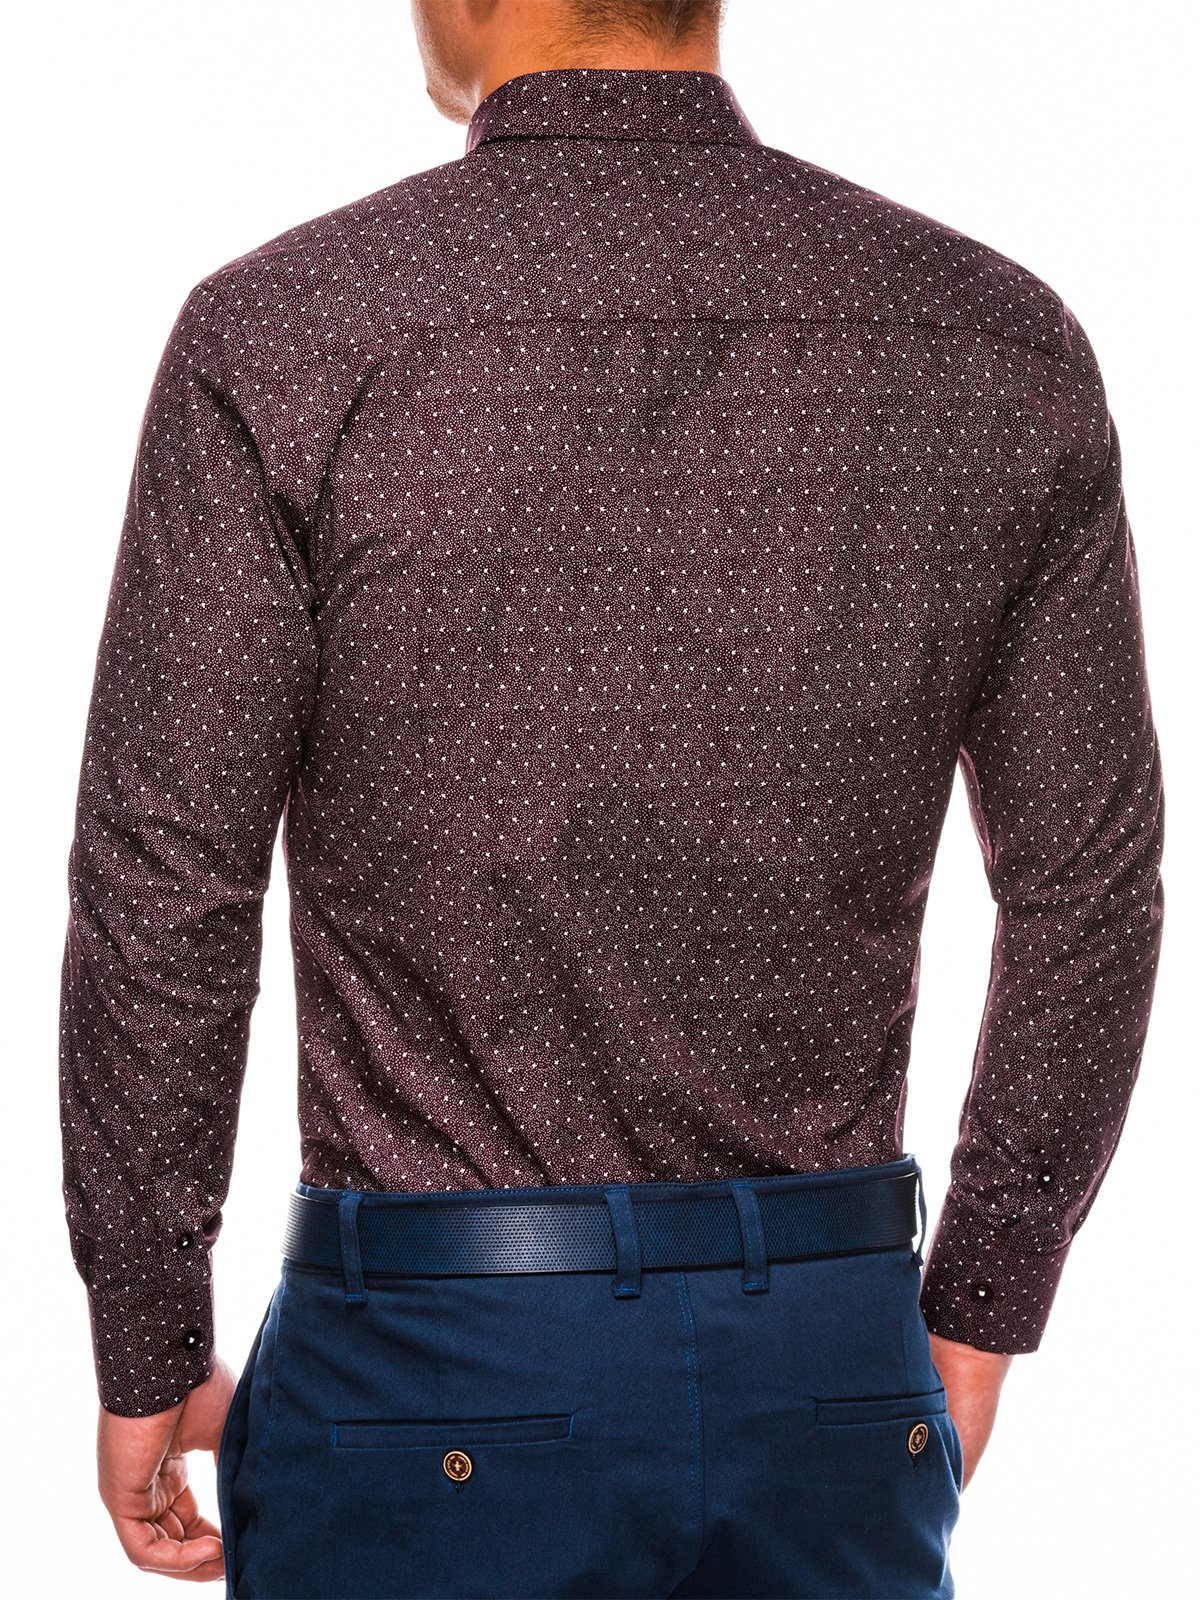 Men's elegant shirt with long sleeves K466 - dark red/white | Ombre.com ...